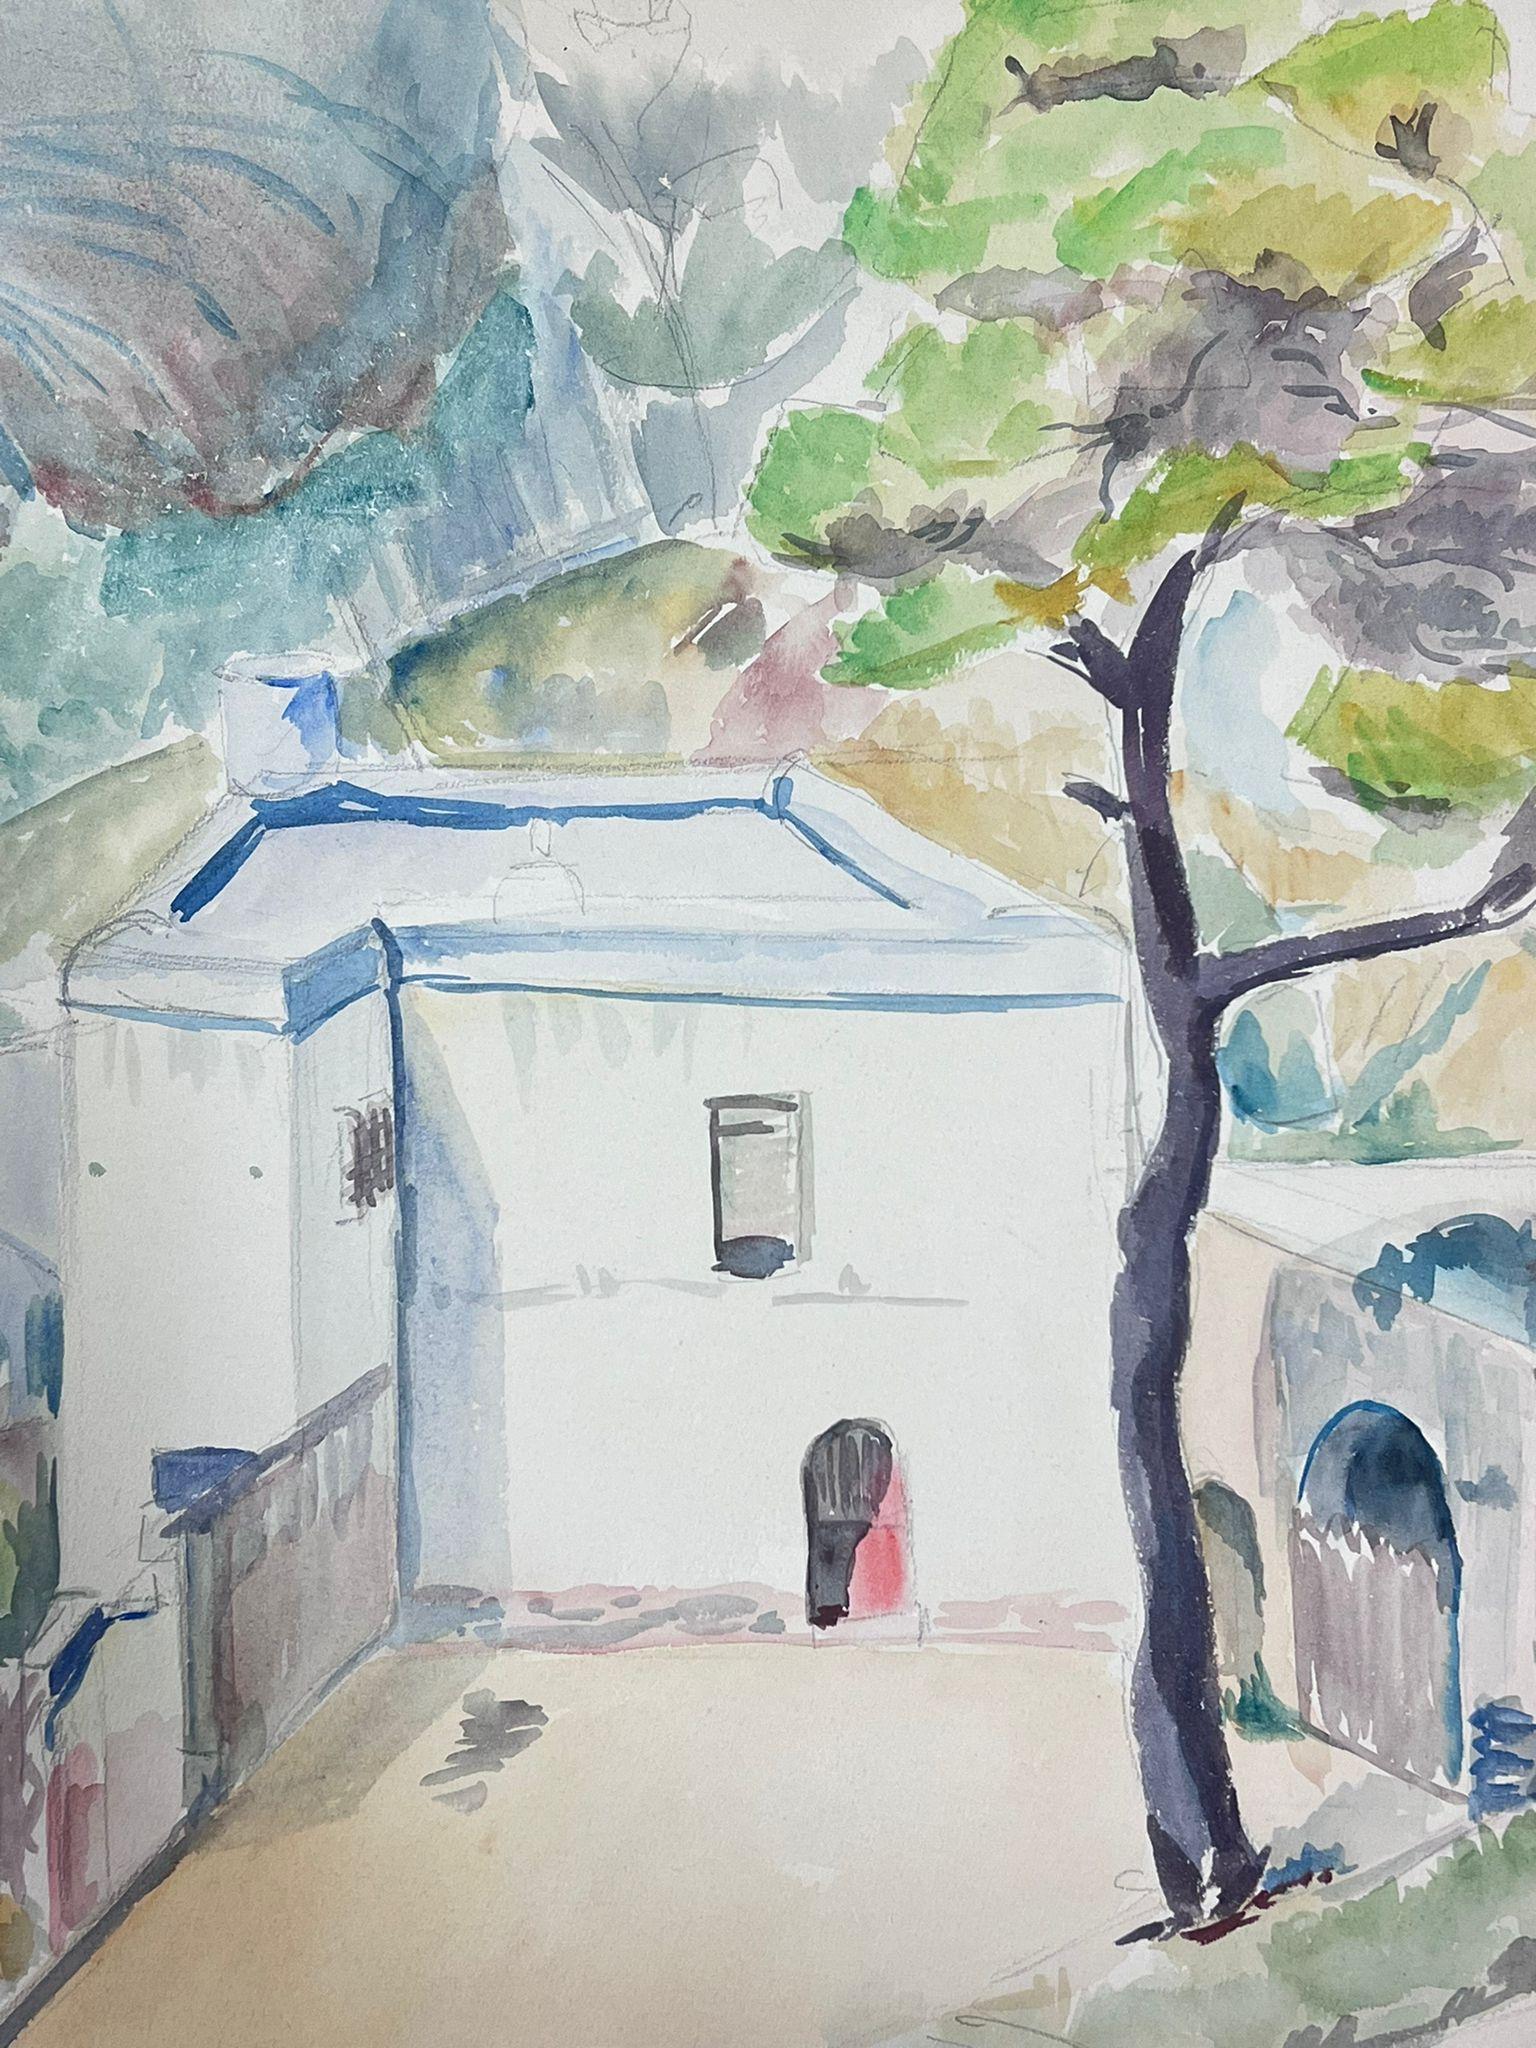 Aquarelle post-impressionniste française du milieu du 20e siècle représentant un château blanc provençal - Moderne Painting par Guy Nicod